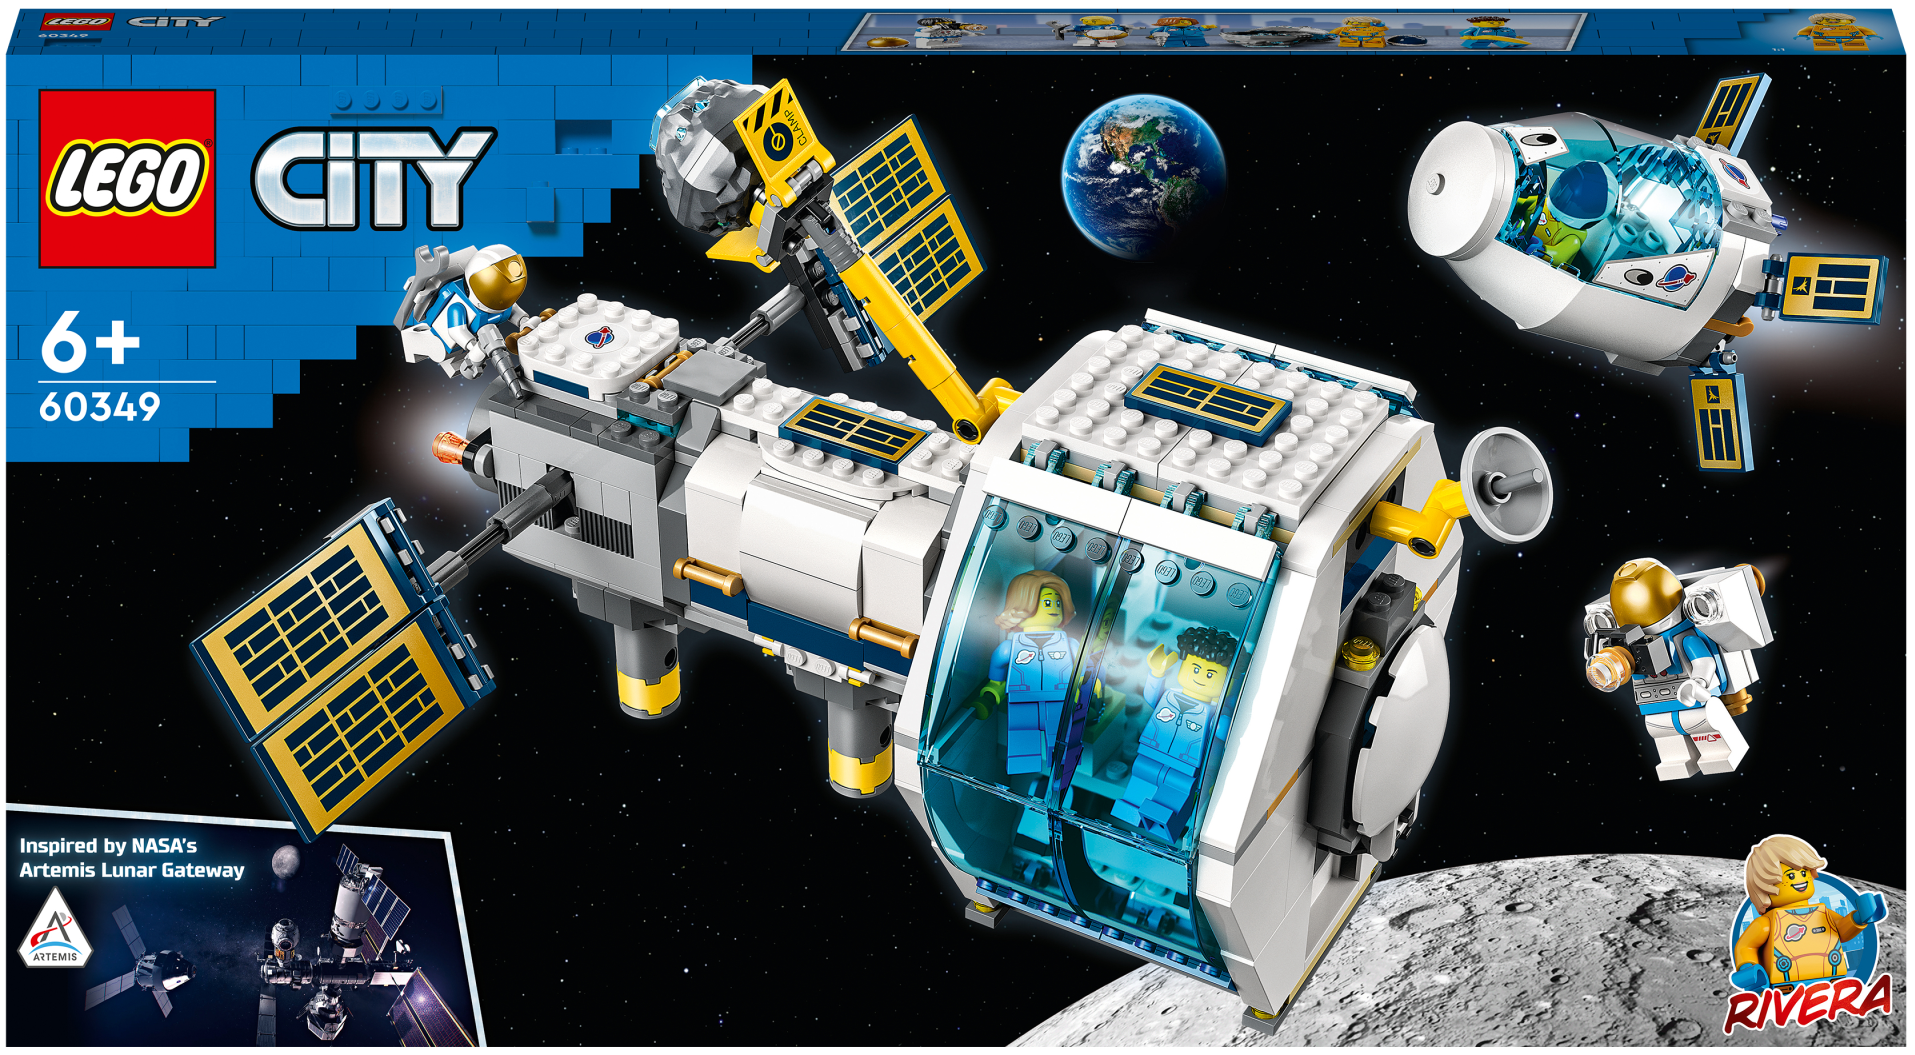 City Space - Stazione spaziale lunare